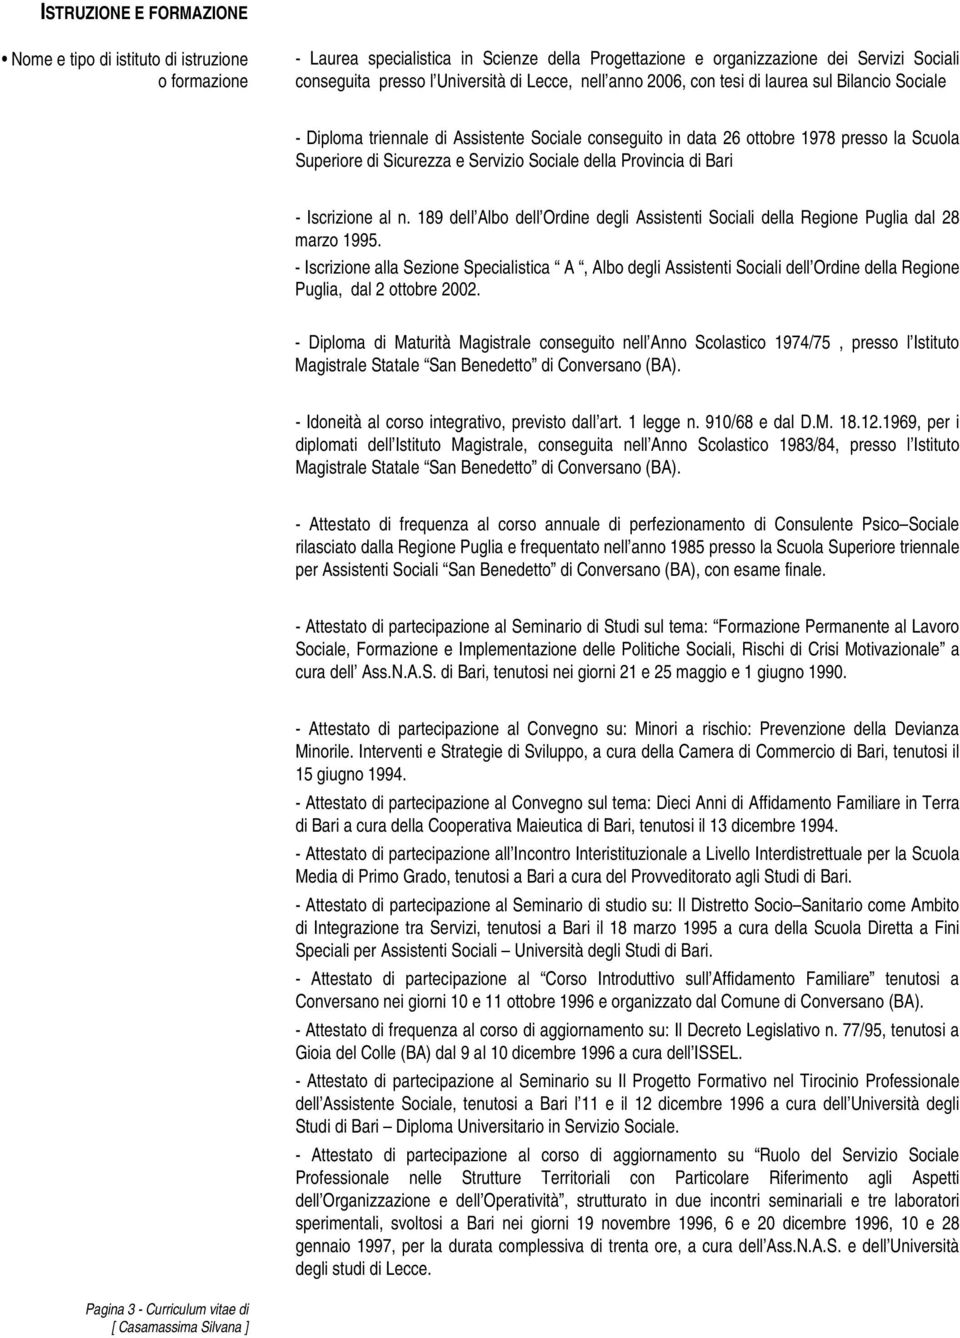 della Provincia di Bari - Iscrizione al n. 189 dell Albo dell Ordine degli Assistenti Sociali della Regione Puglia dal 28 marzo 1995.